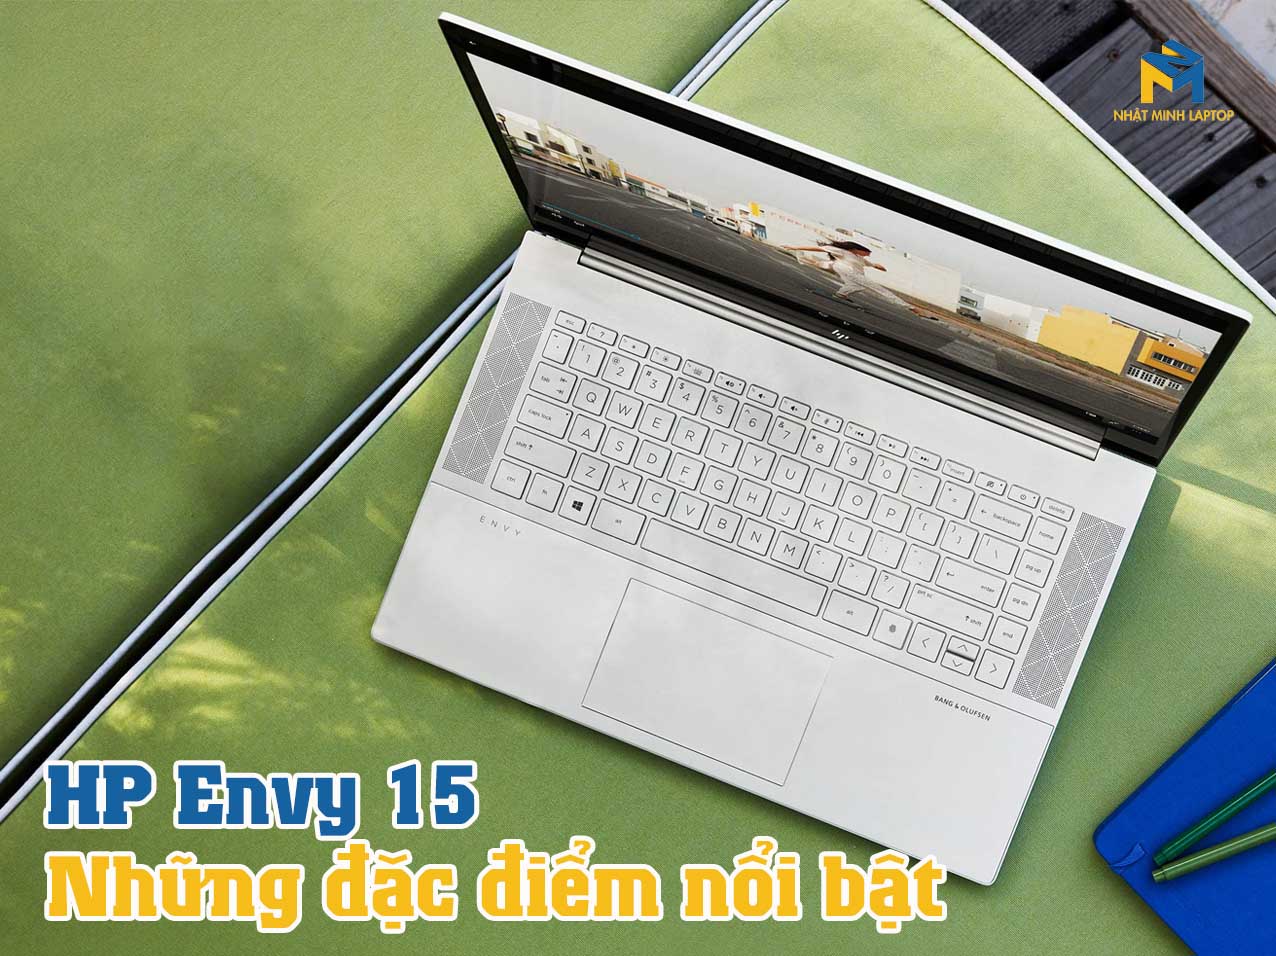 Laptop HP Envy 15 sở hữu những đặc điểm nổi bật nào?